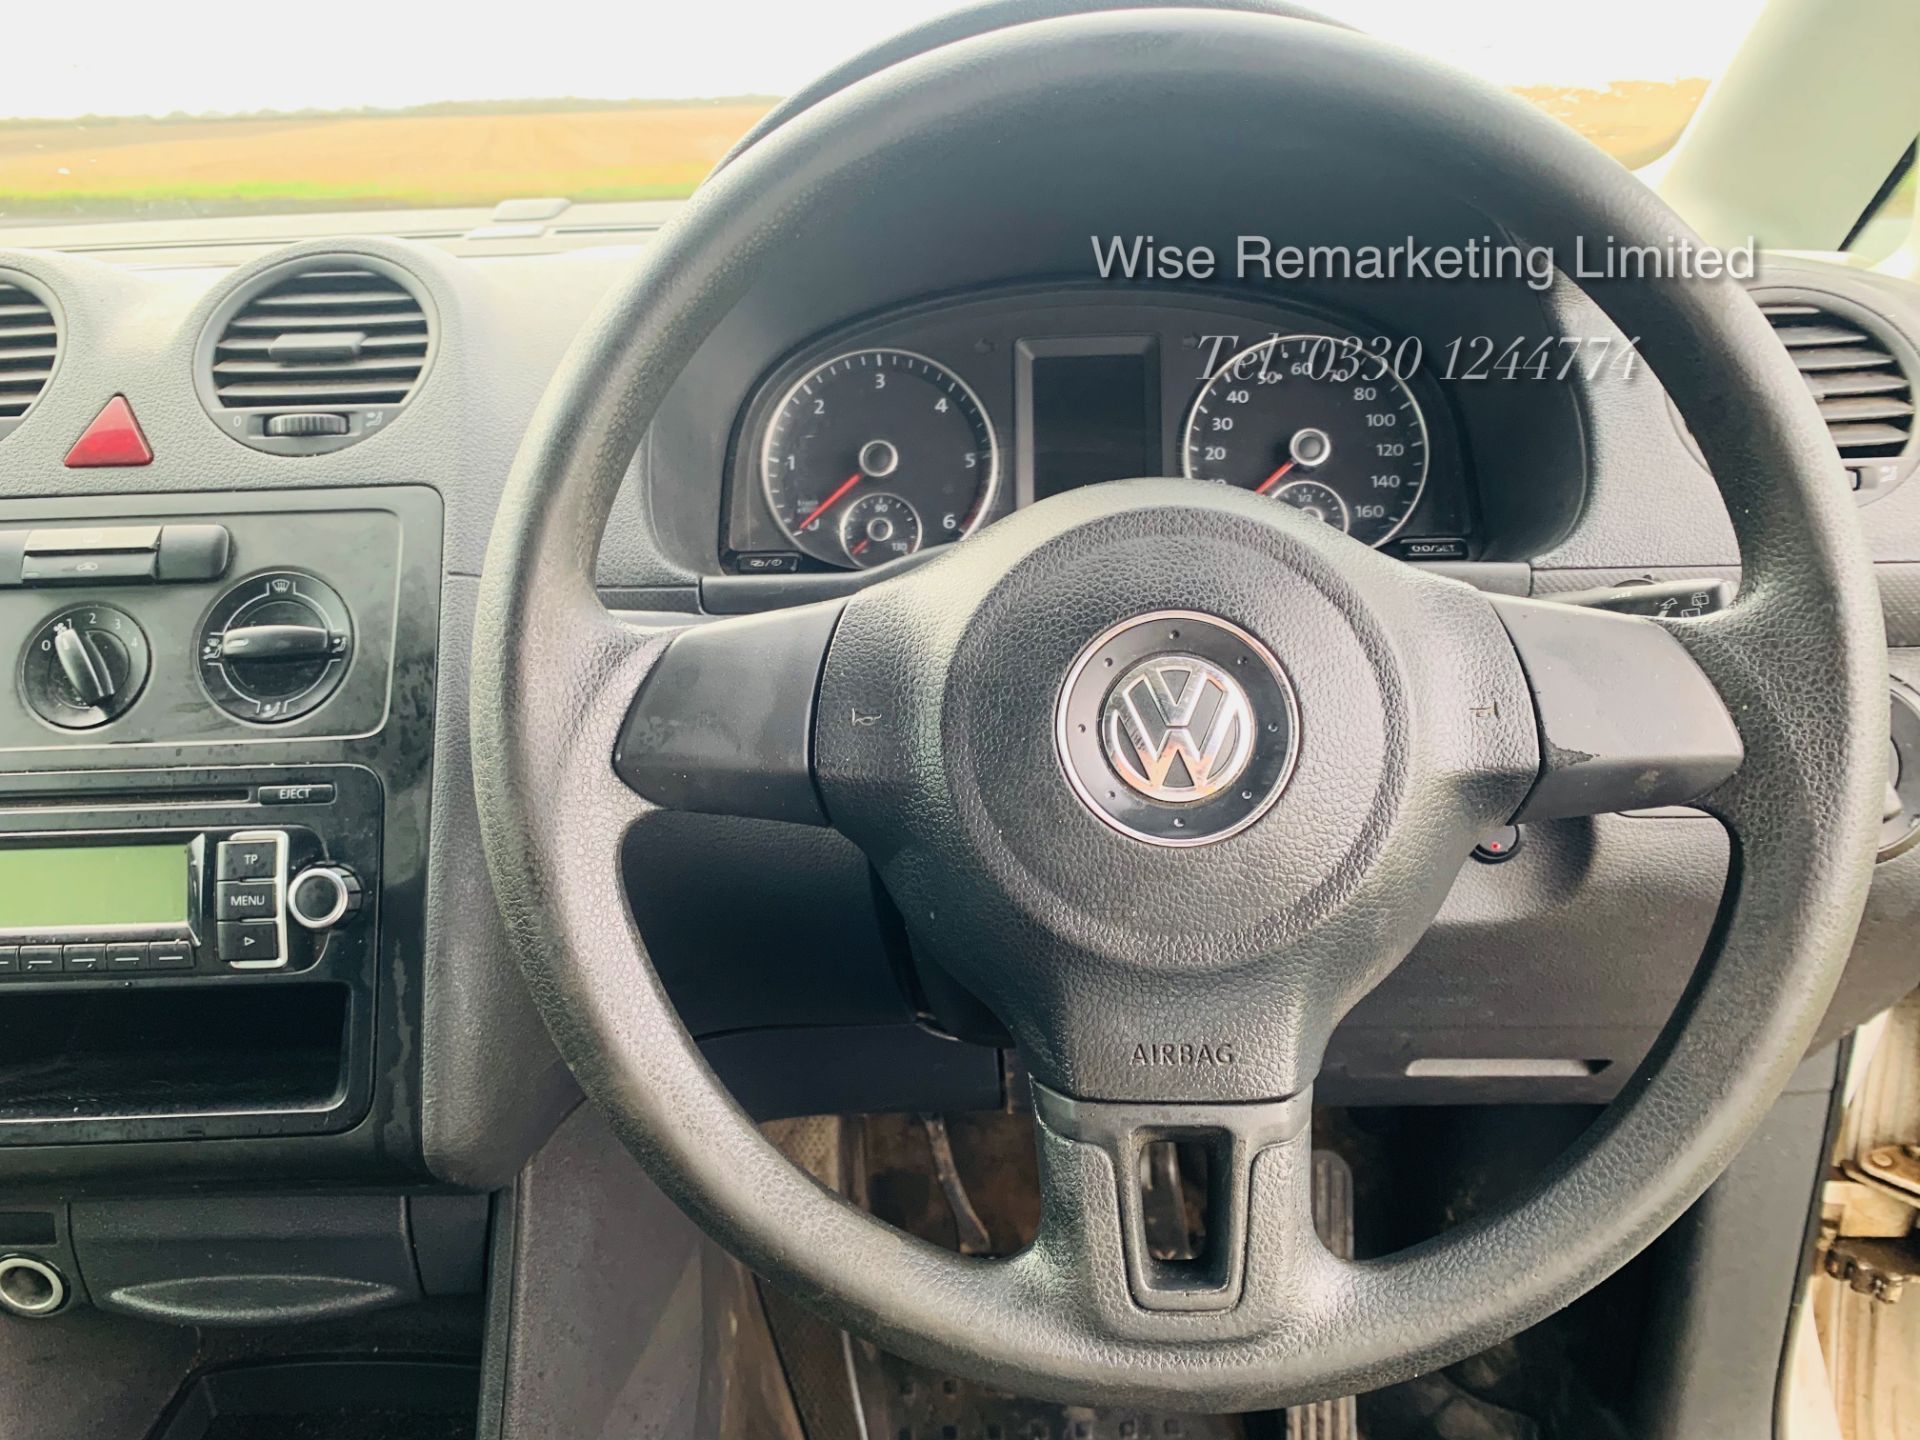 Volkswagen Caddy C20 1.6 TDI - 2013 13 Reg - Side Loading Door - Cruise Control - - Image 13 of 15